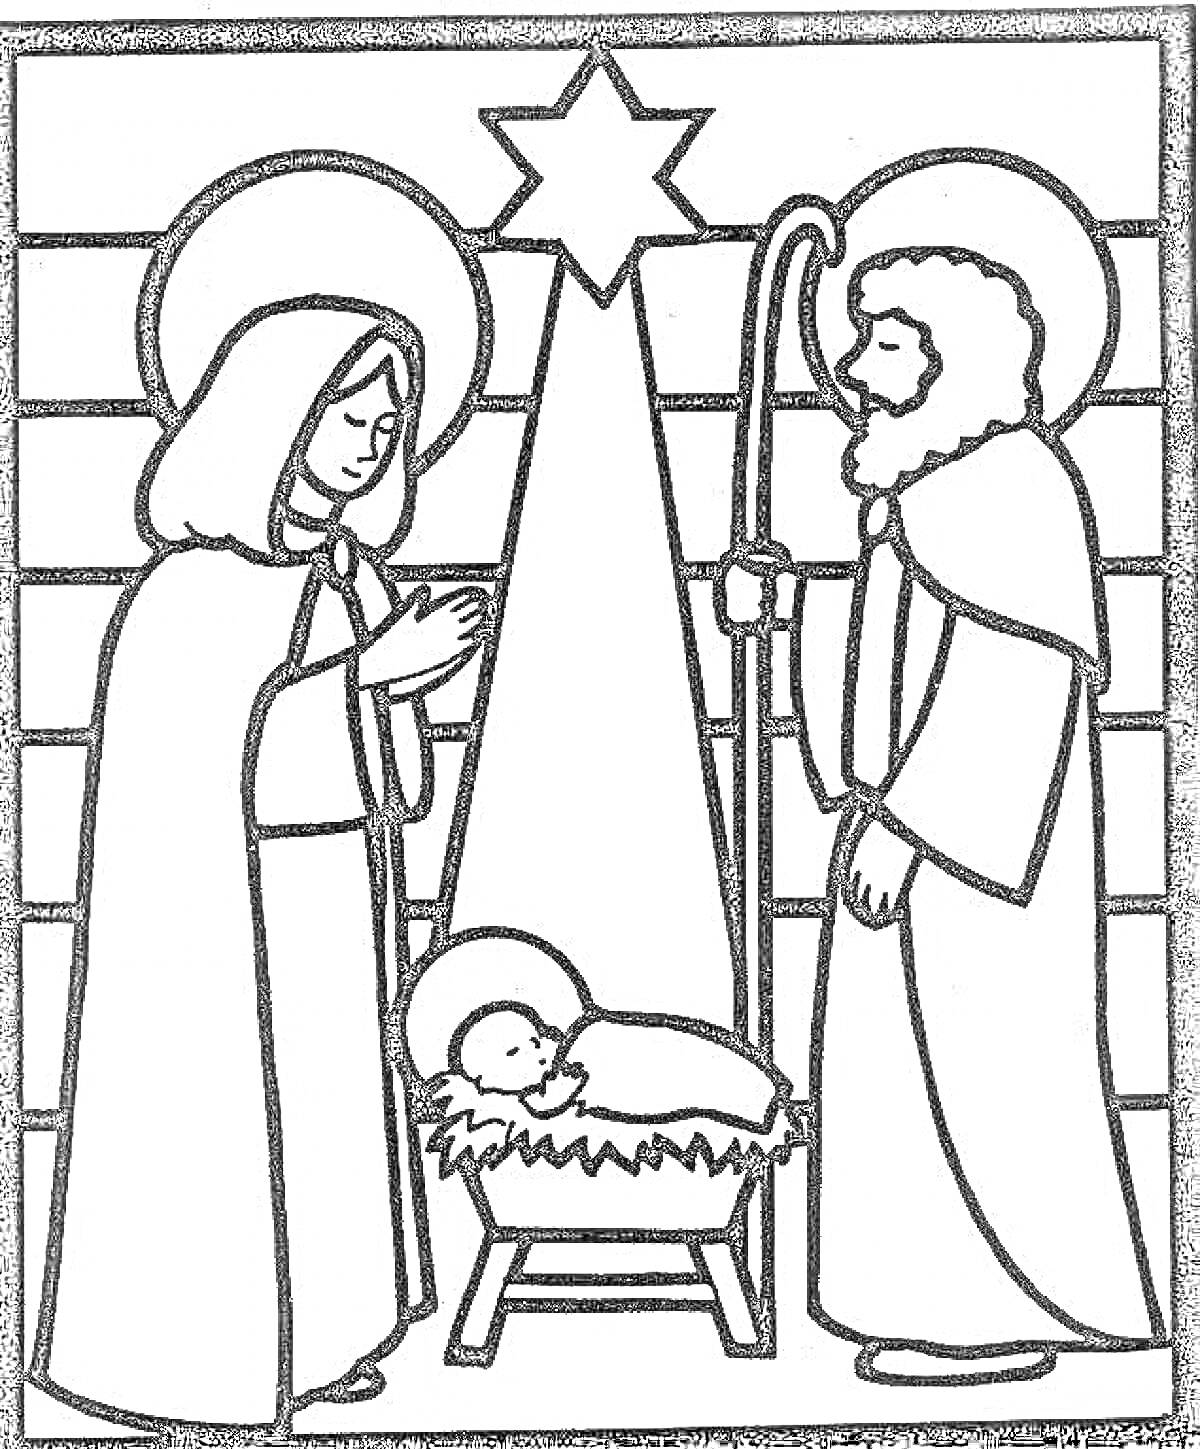 Святое семейство у яслей на Рождество, Мария, Иосиф, младенец Иисус, пастух, звезда, корытце